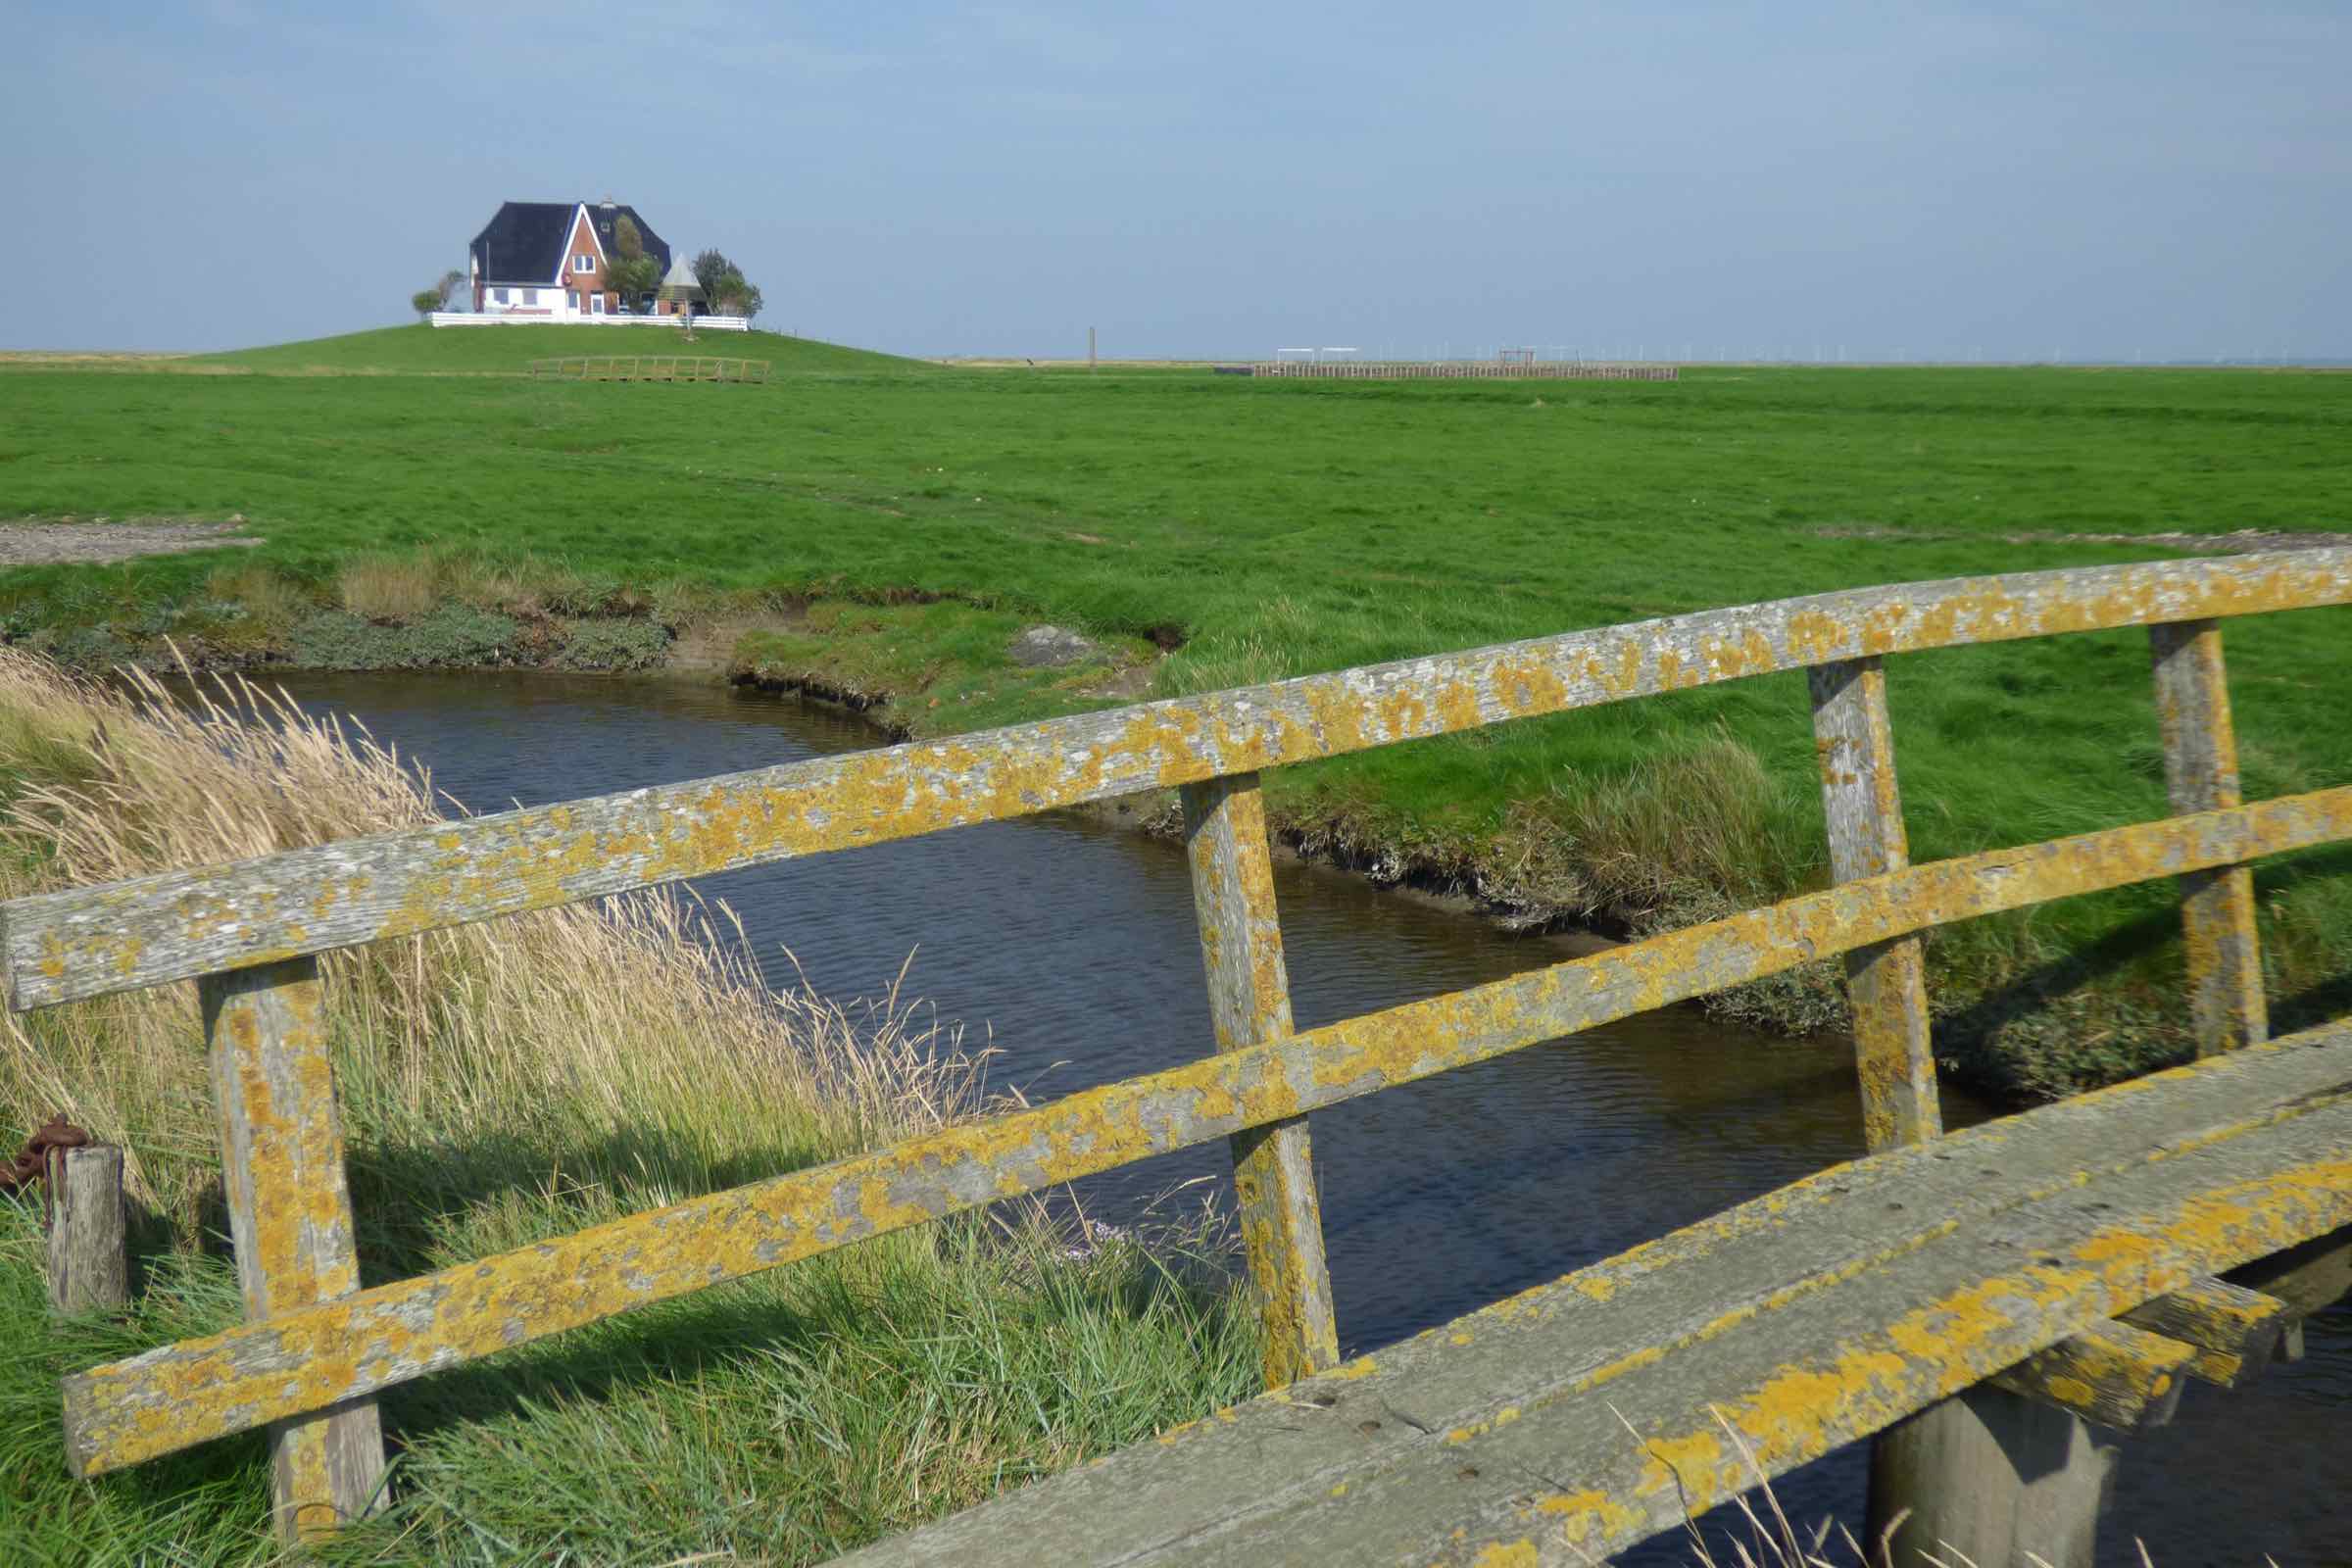 Fahren Sie mit der MS Nordfriesland nach Nordstrandischmoor und lernen Sie dort das Halligleben kennen. Nordstrandischmoor ist die jüngste der zehn Halligen und entstand 1634 bei einer großen Sturmflut.